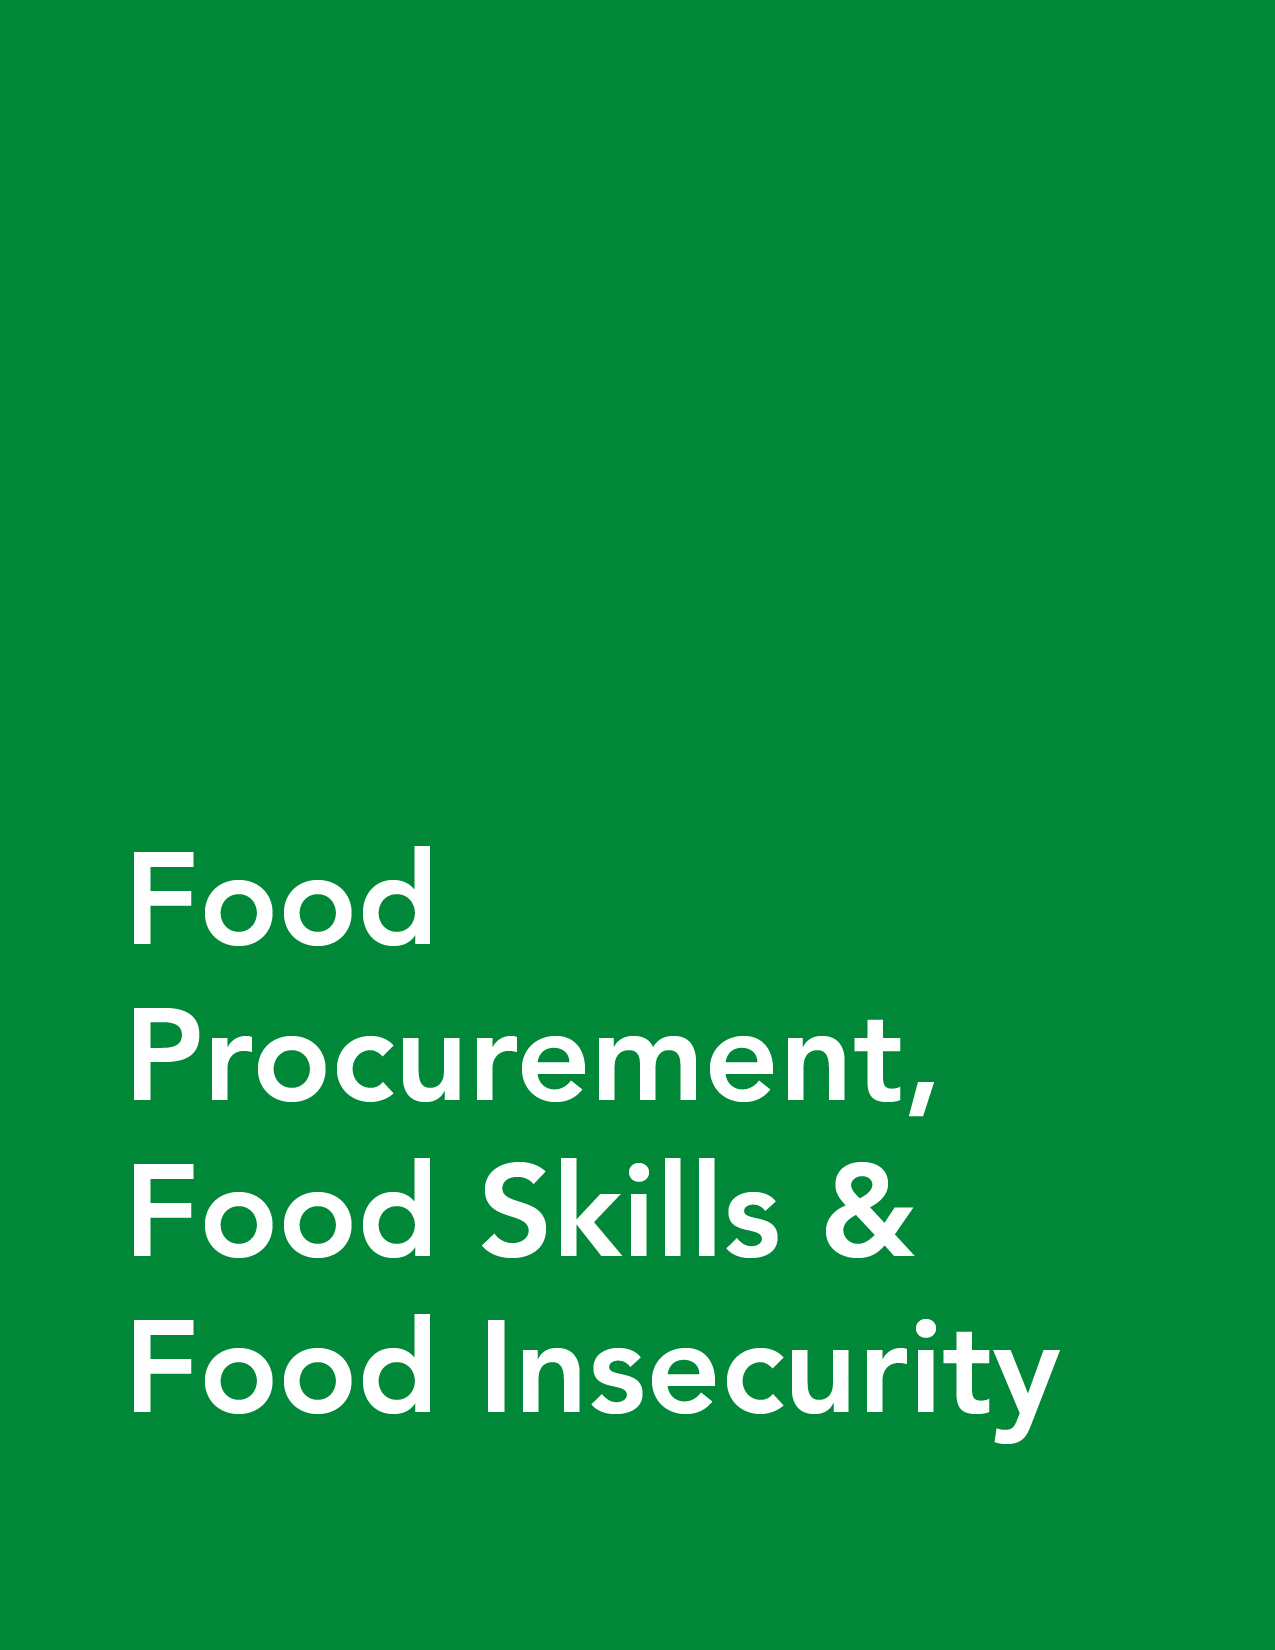 Food Procurement, Food Skills & Food Insecurity